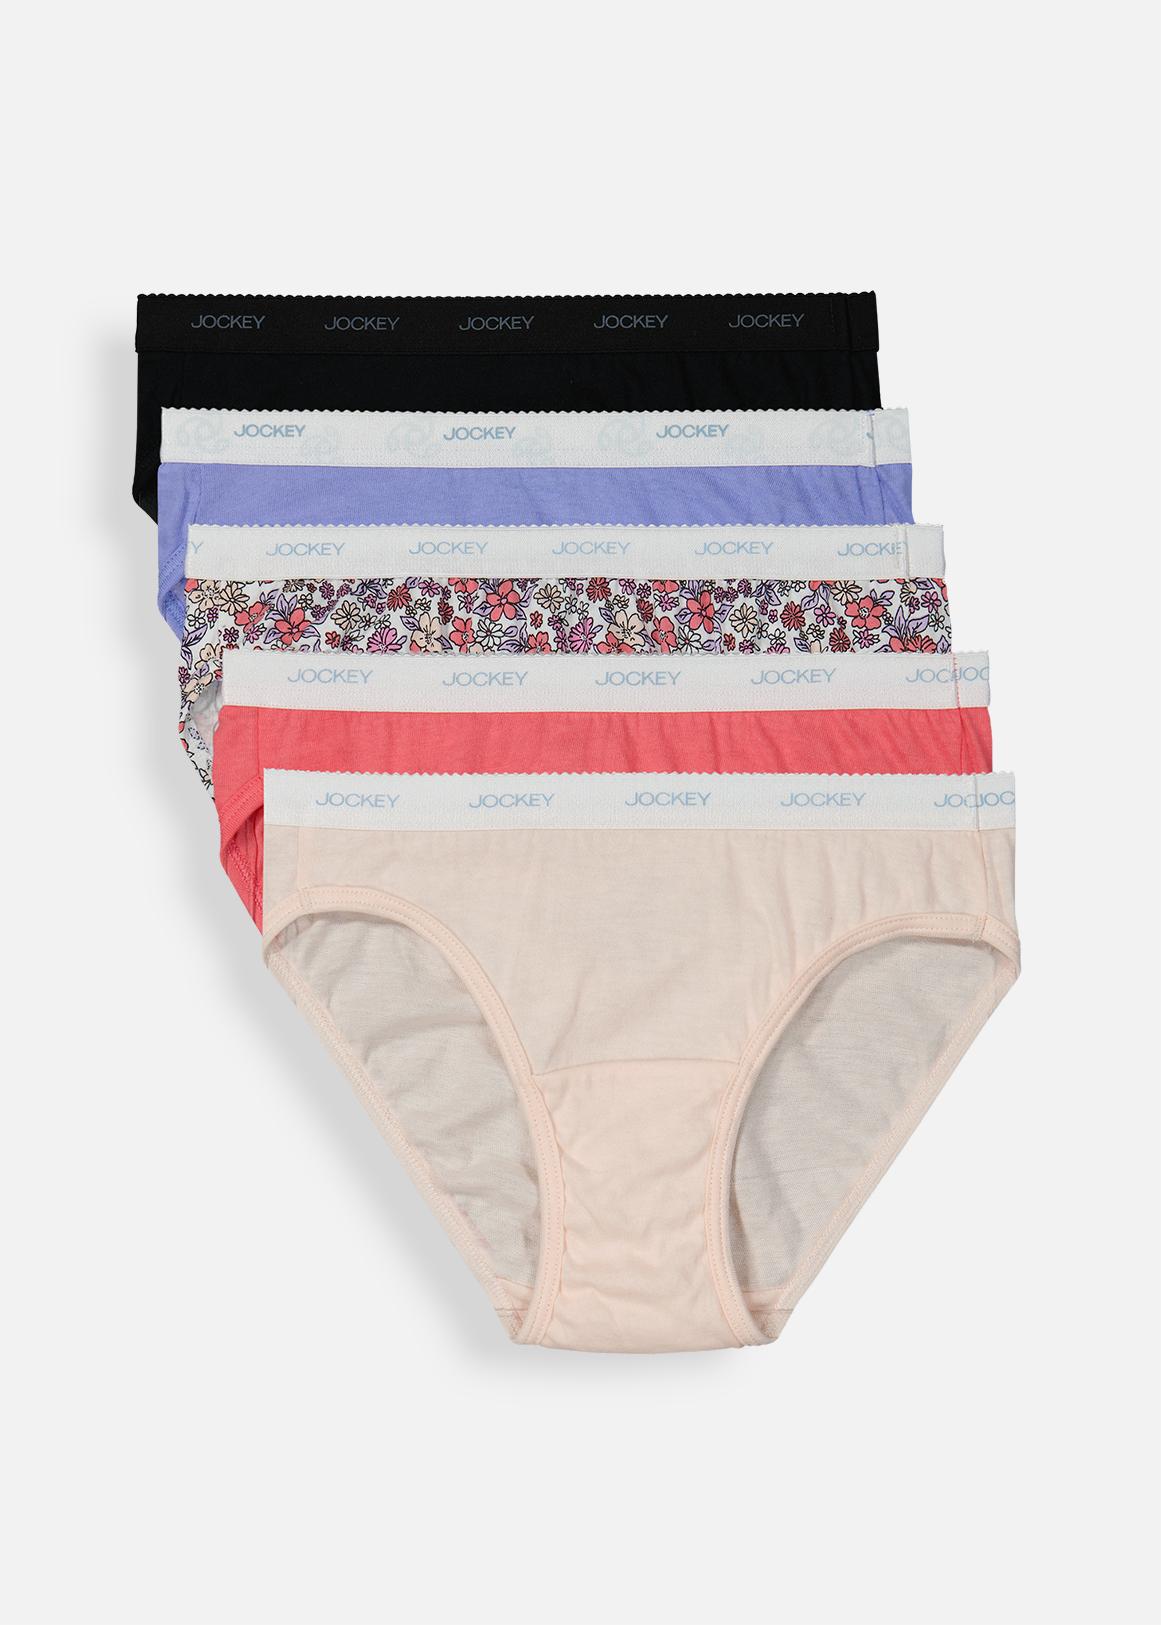 Jockey Women's Panties, Buy Online, South Africa